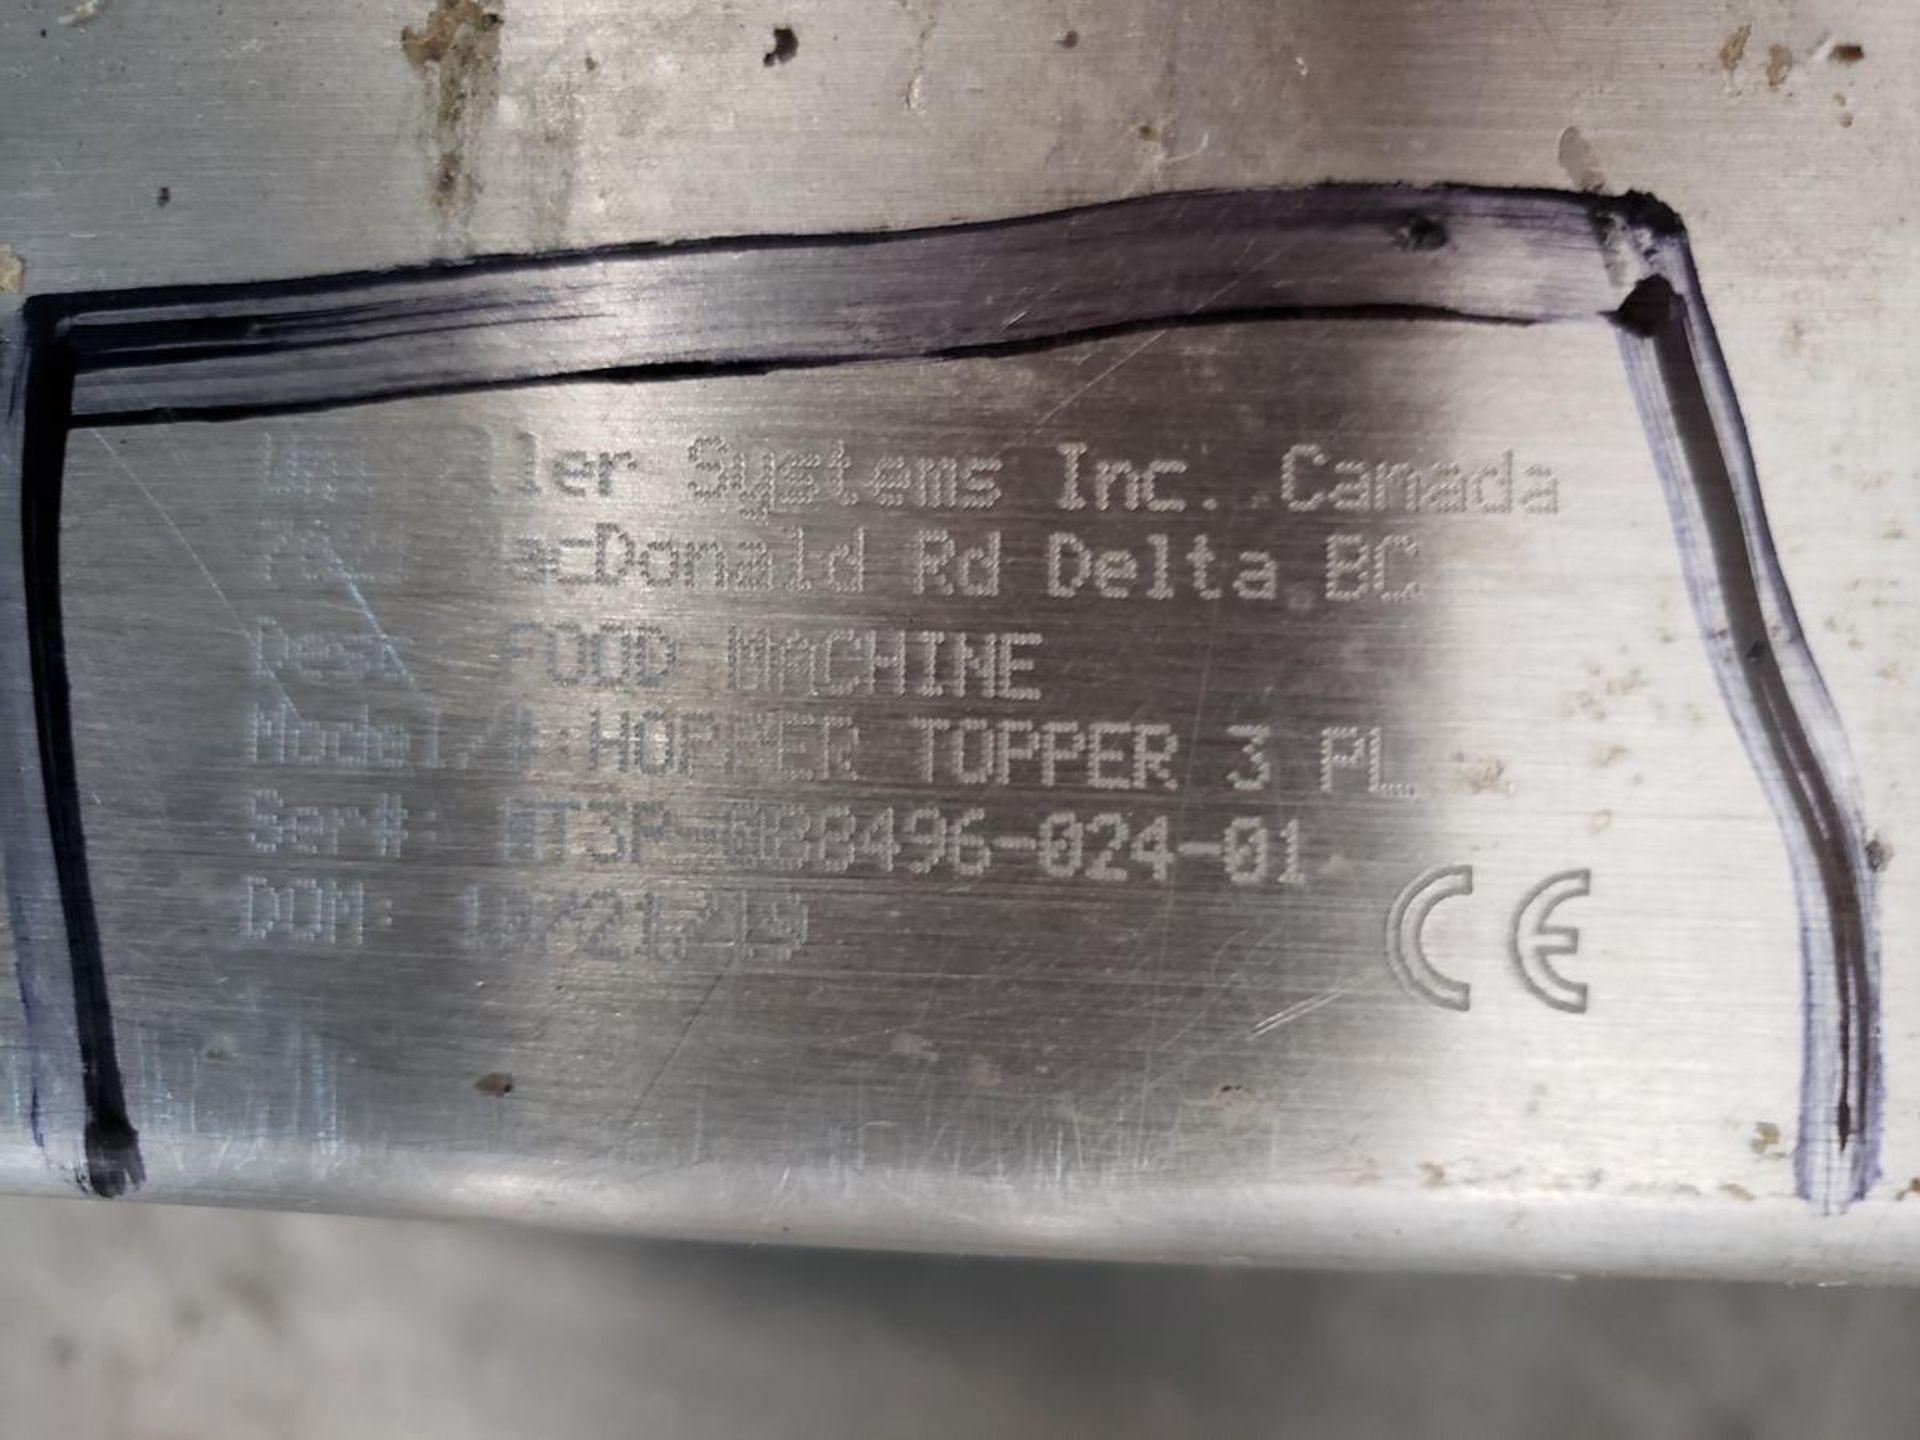 2019 Unifiller Hopper Topper Transfer Pump, S/N HT3P-088496-024-01 | Rig Fee: $100 - Image 2 of 2